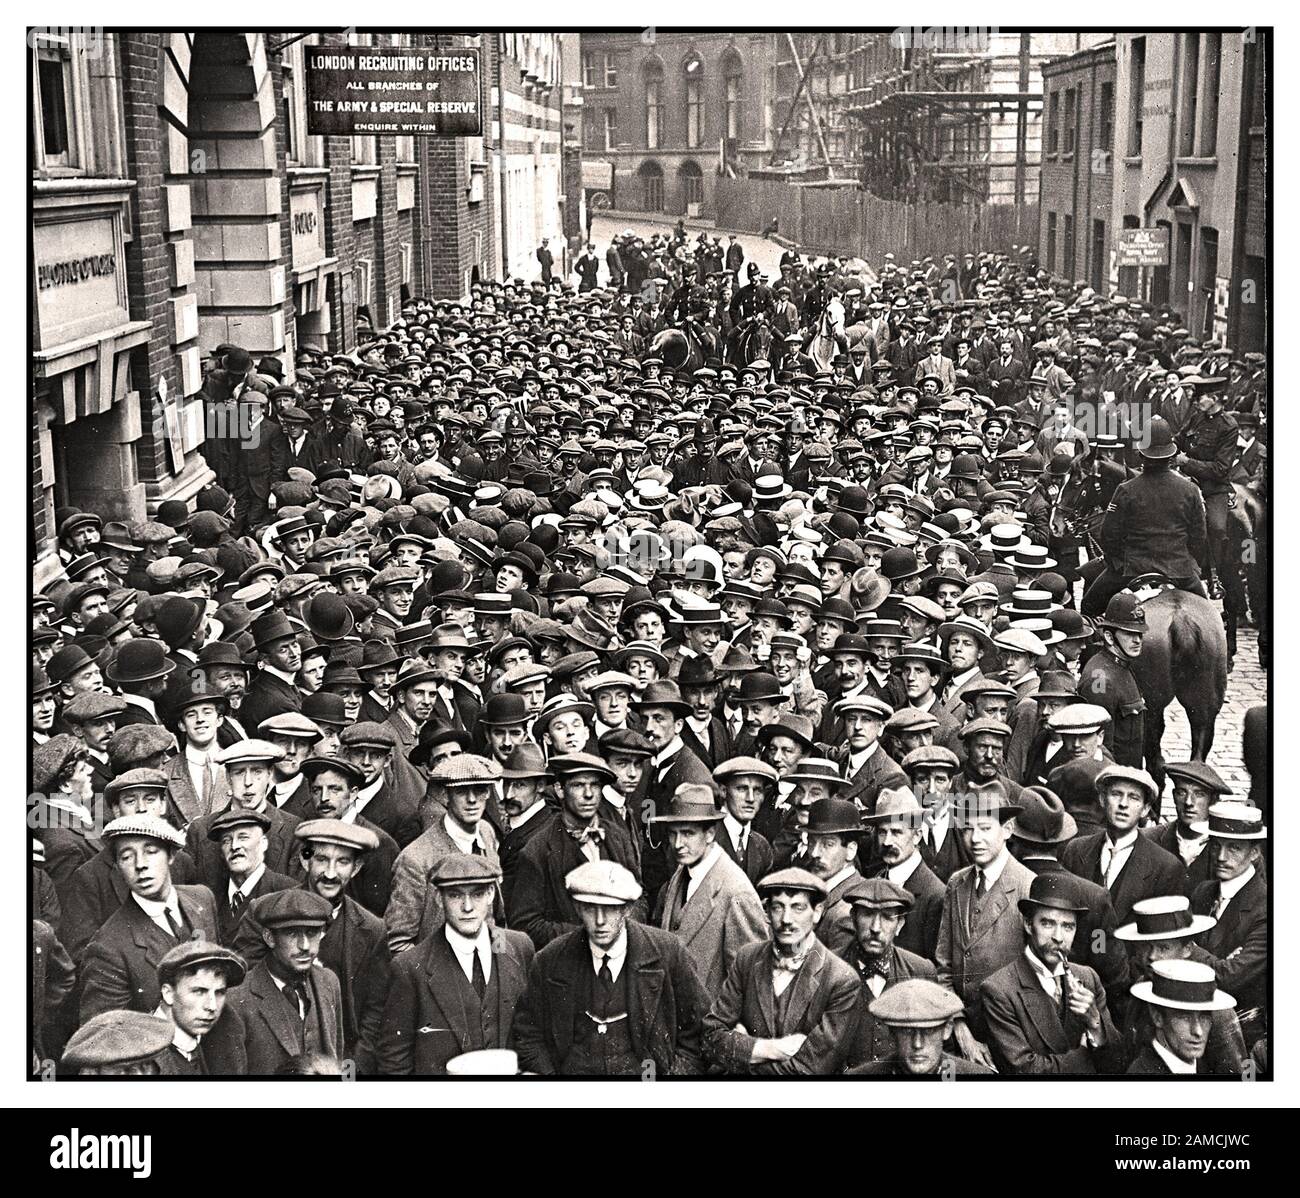 WW1 Recruitment Volunteers vor einem Londoner Rekrutierungsbüro, 1914. Die Öffentlichkeit versammelte sich um das, was sie für einen gerechten Zweck im Ersten Weltkrieg hielten. Jeden Tag kamen Tausende von Männern dazu. 1. Weltkrieg 1. Weltkrieg Armee Rekrutierungsbüro mit Haufen fröhlicher junger Männer, die bereit sind, sich für den Krieg anzumelden. Lord Derby Rekrutierungskampagne.Walworth Town Hall Southwark London 1914 erster Weltkrieg Stockfoto